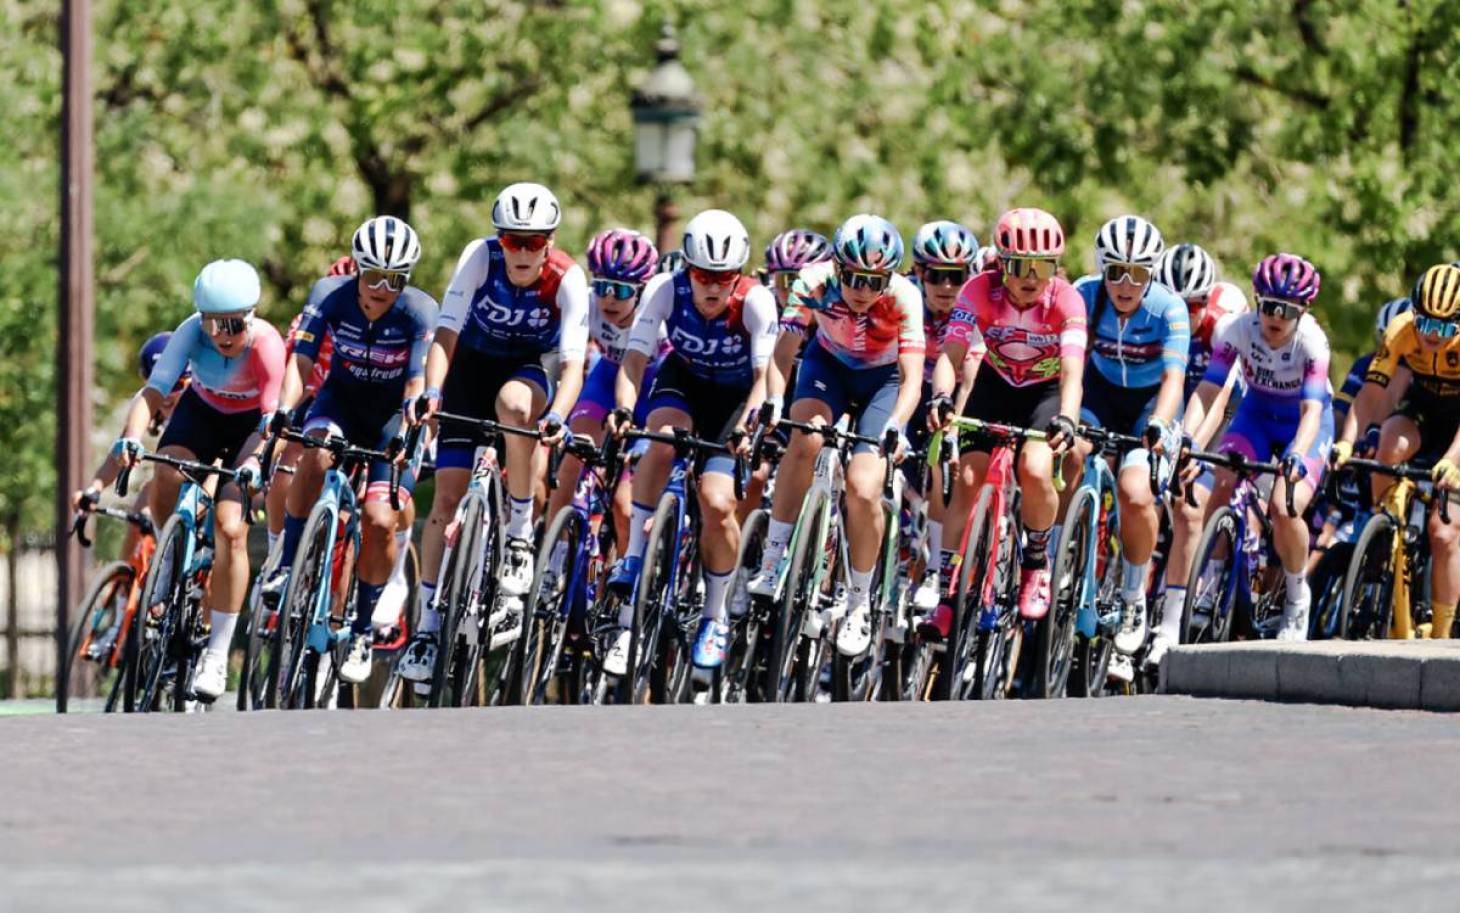 Cyclisme - La FDJ Suez Futuroscope entame le Tour de France par un Top 10